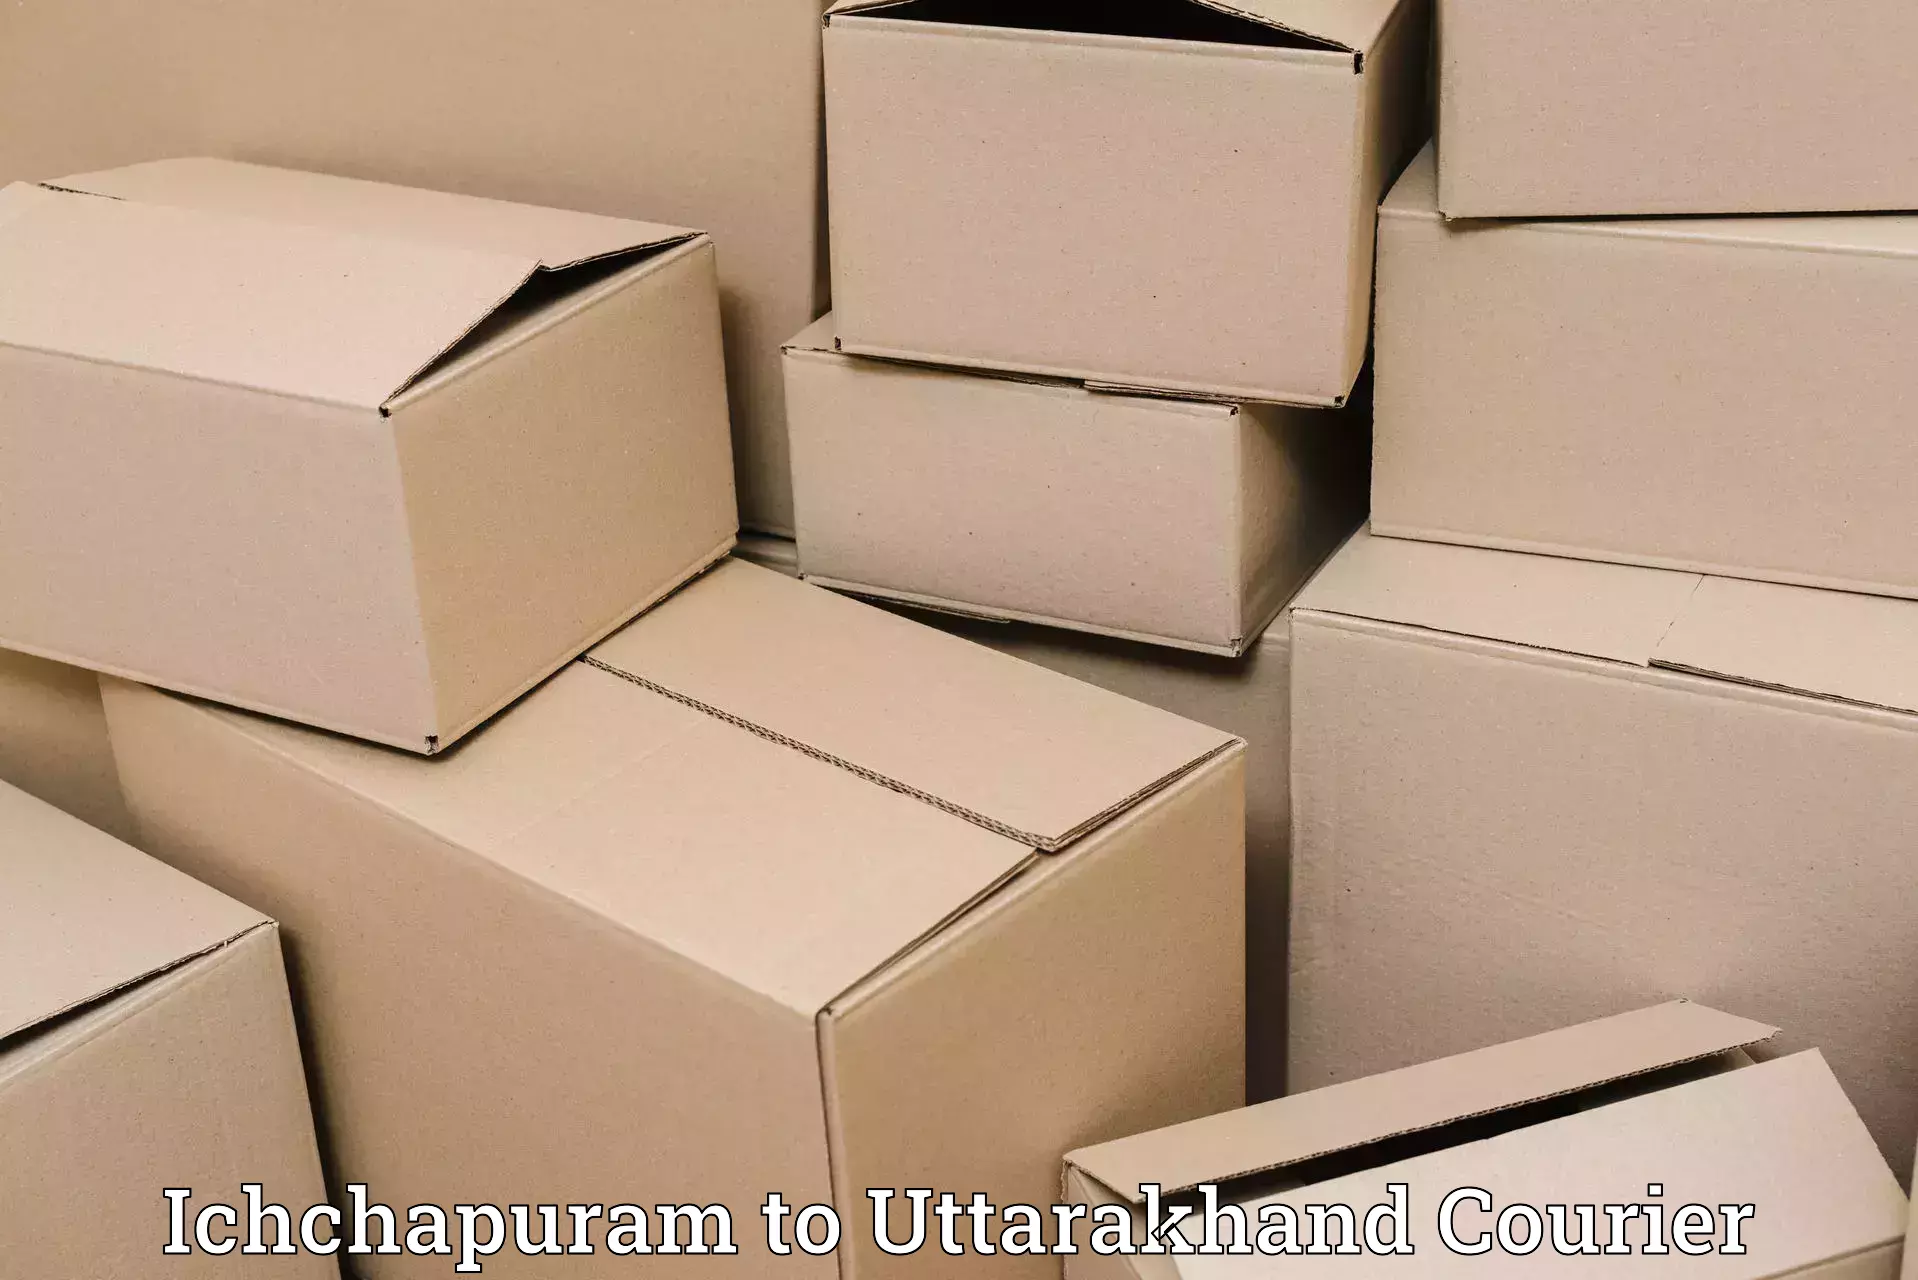 Special handling courier Ichchapuram to Pauri